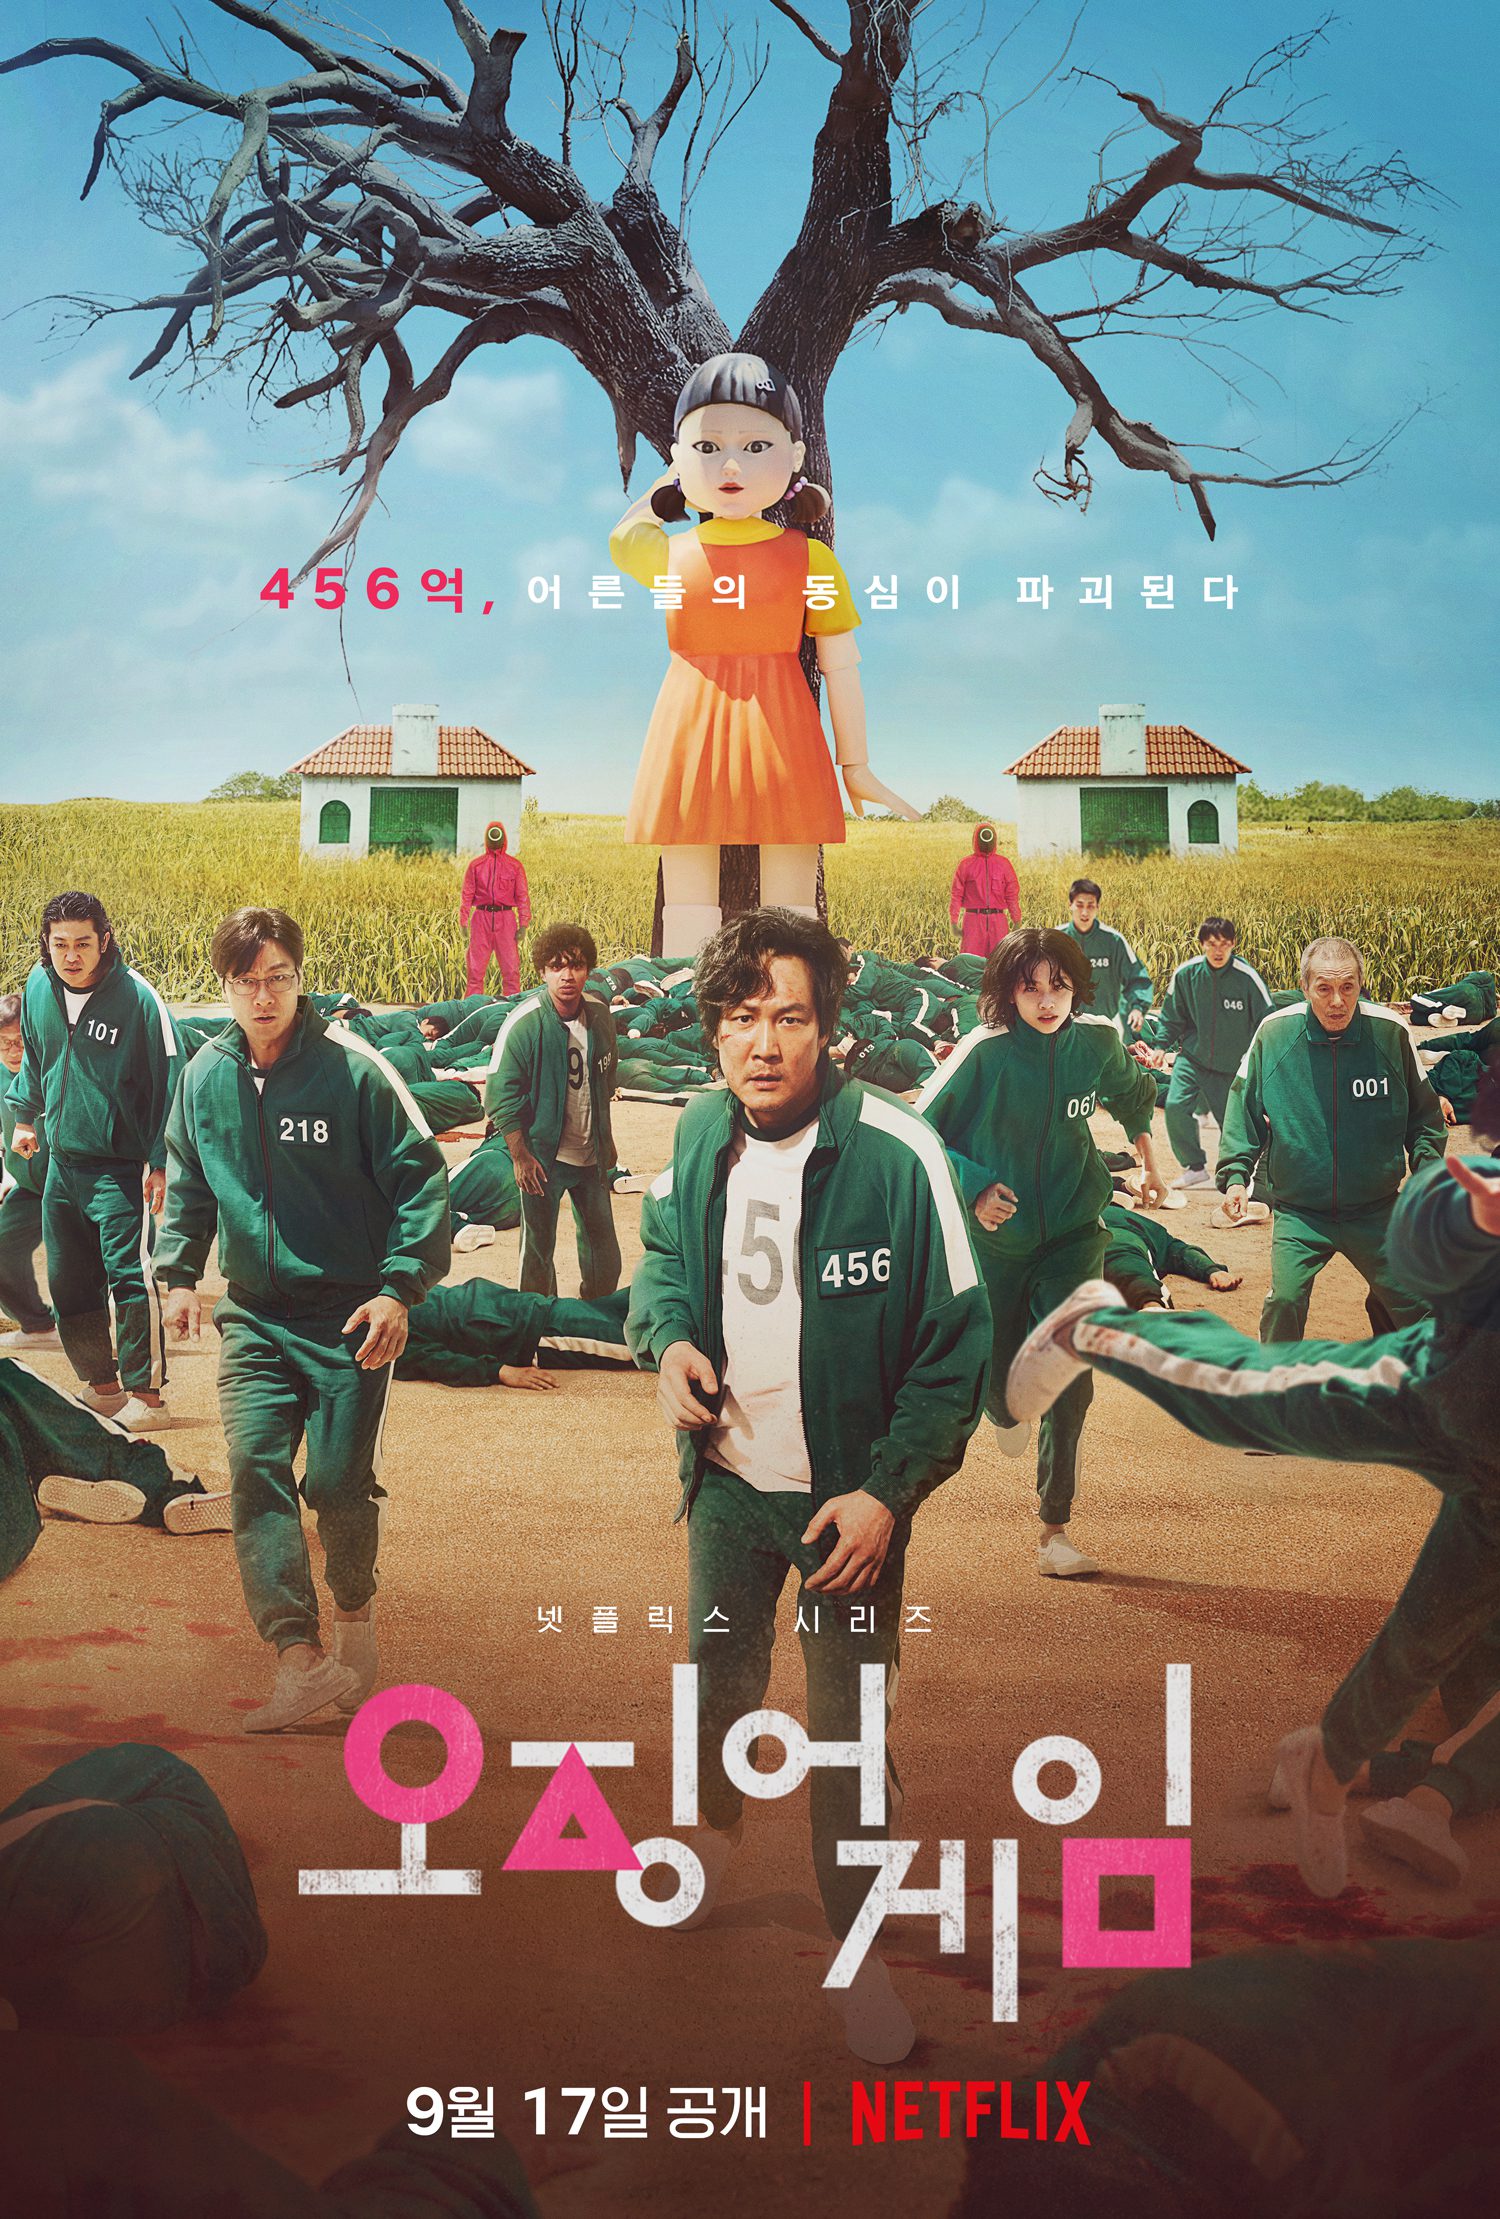 3 serie TV coreane da vedere su Netflix (oltre Squid Game)